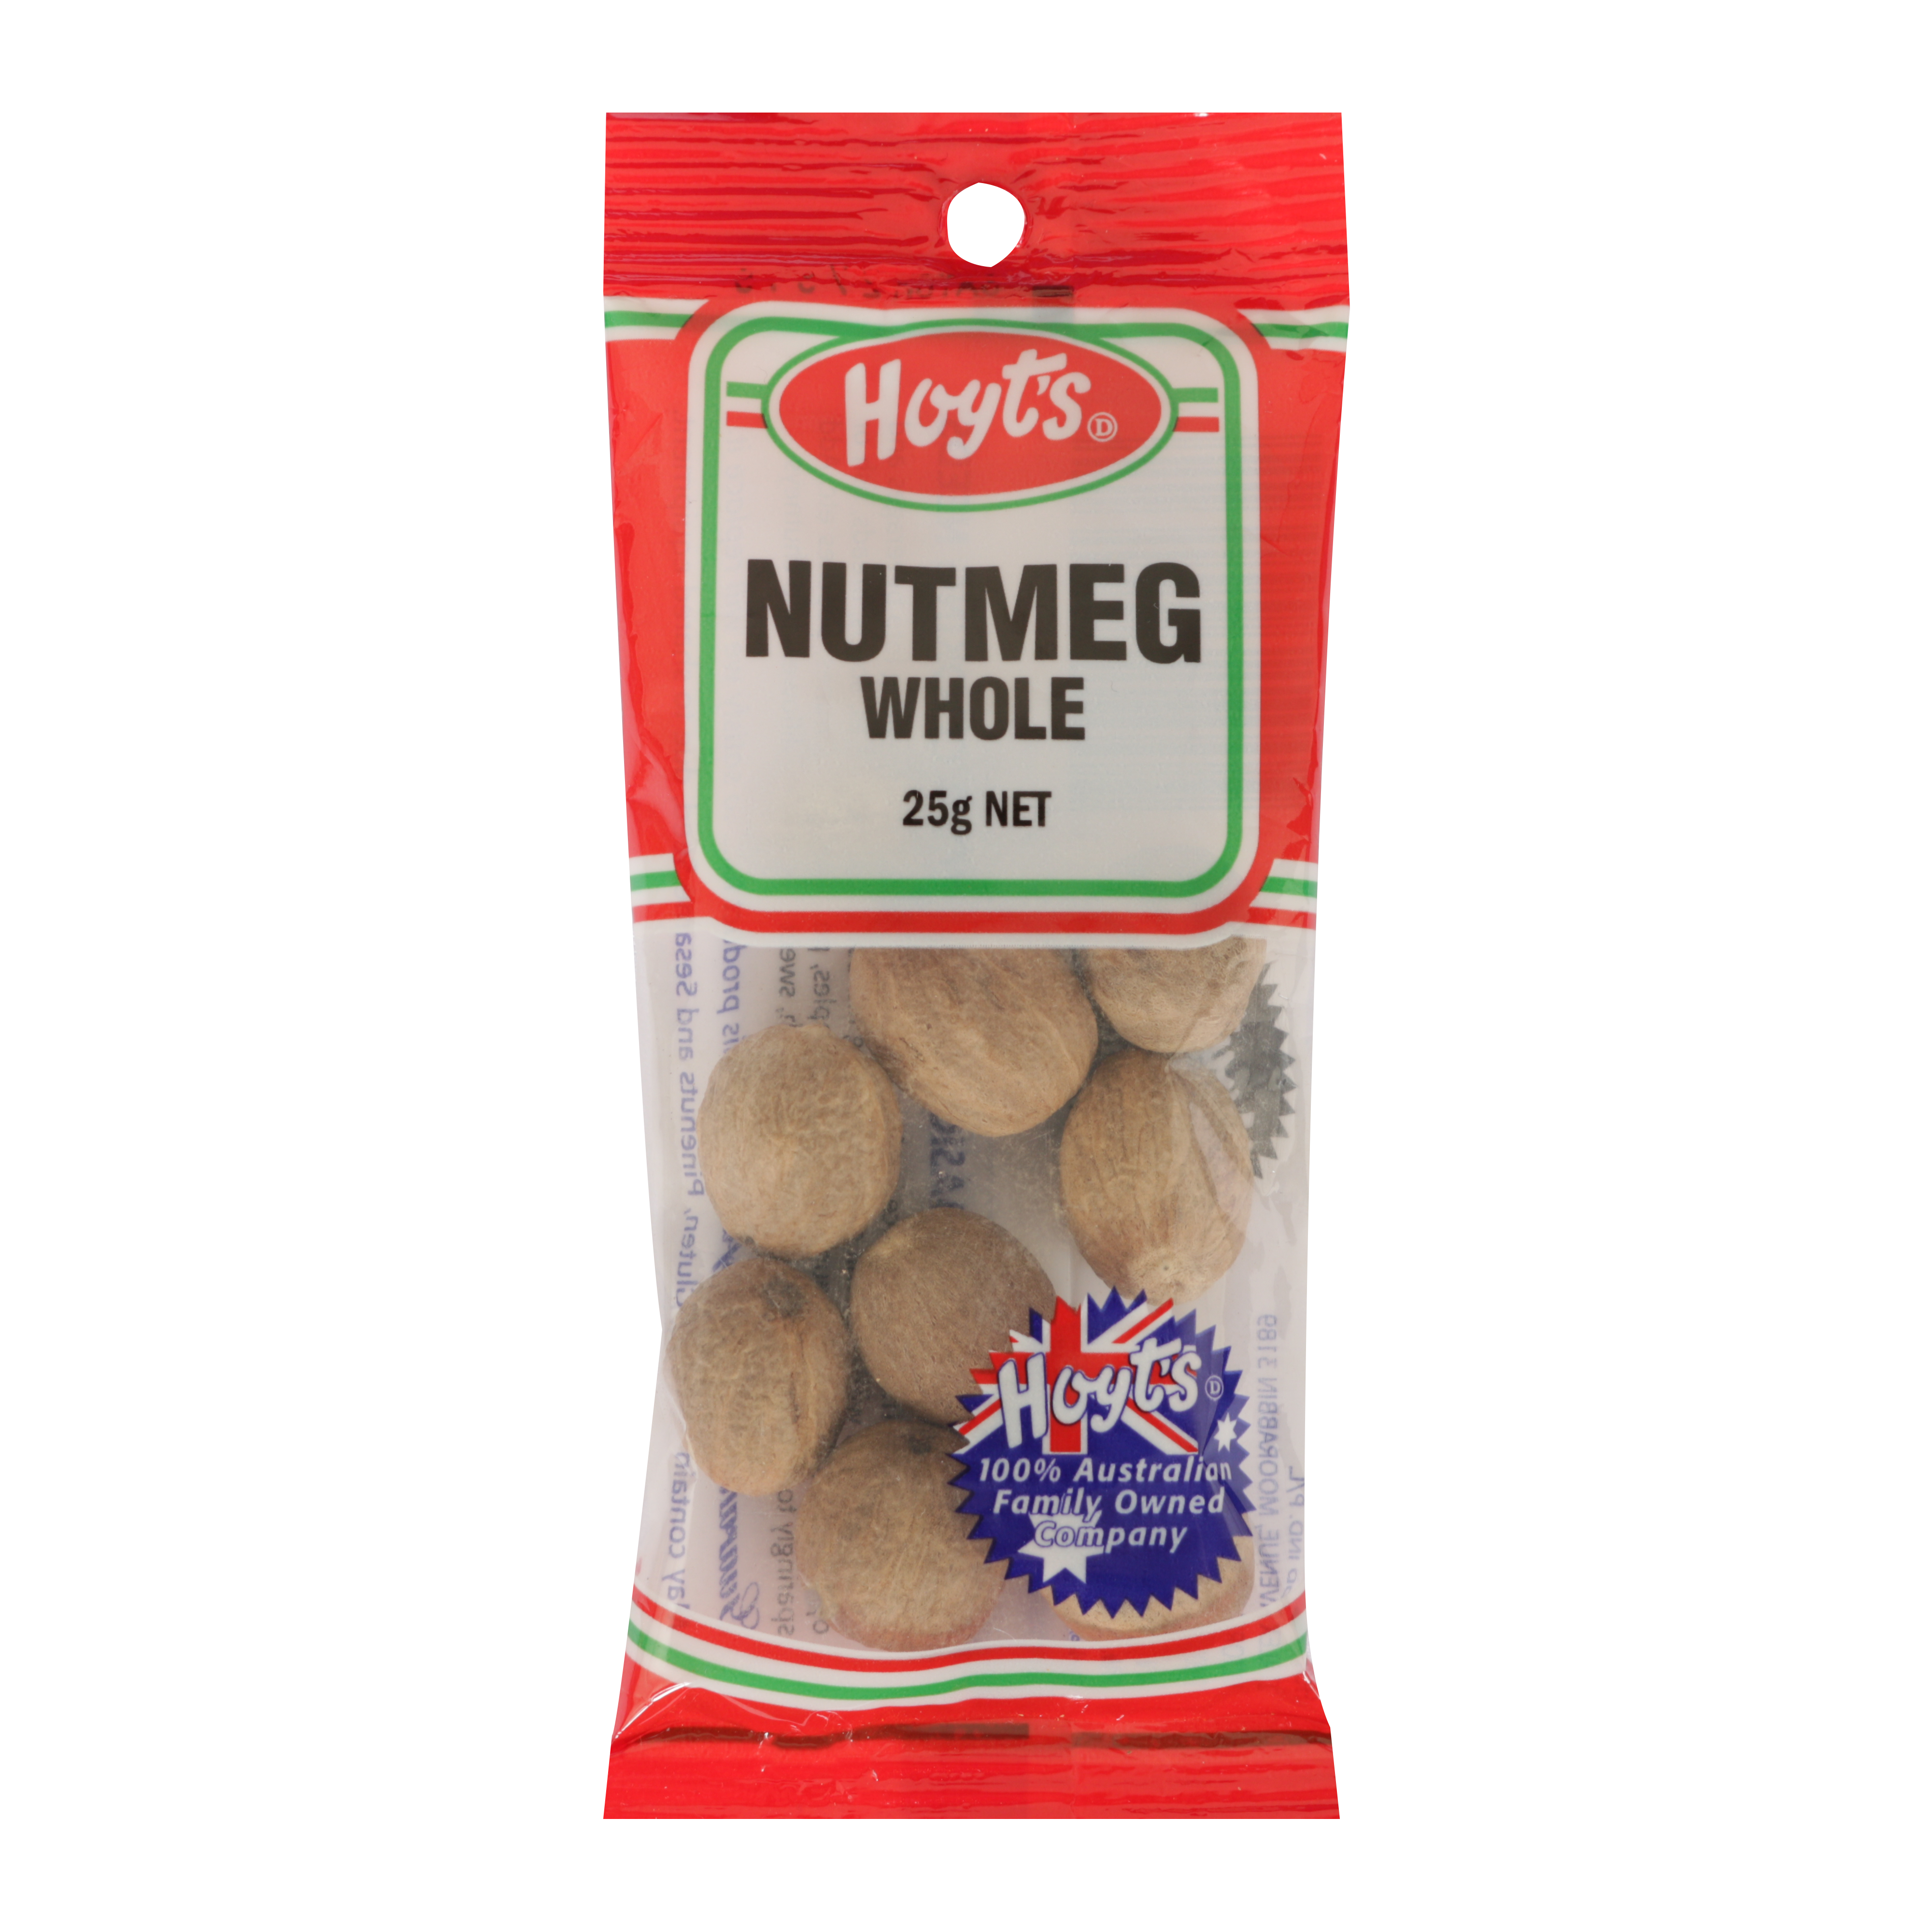 Hoyts Nutmeg Whole 25g